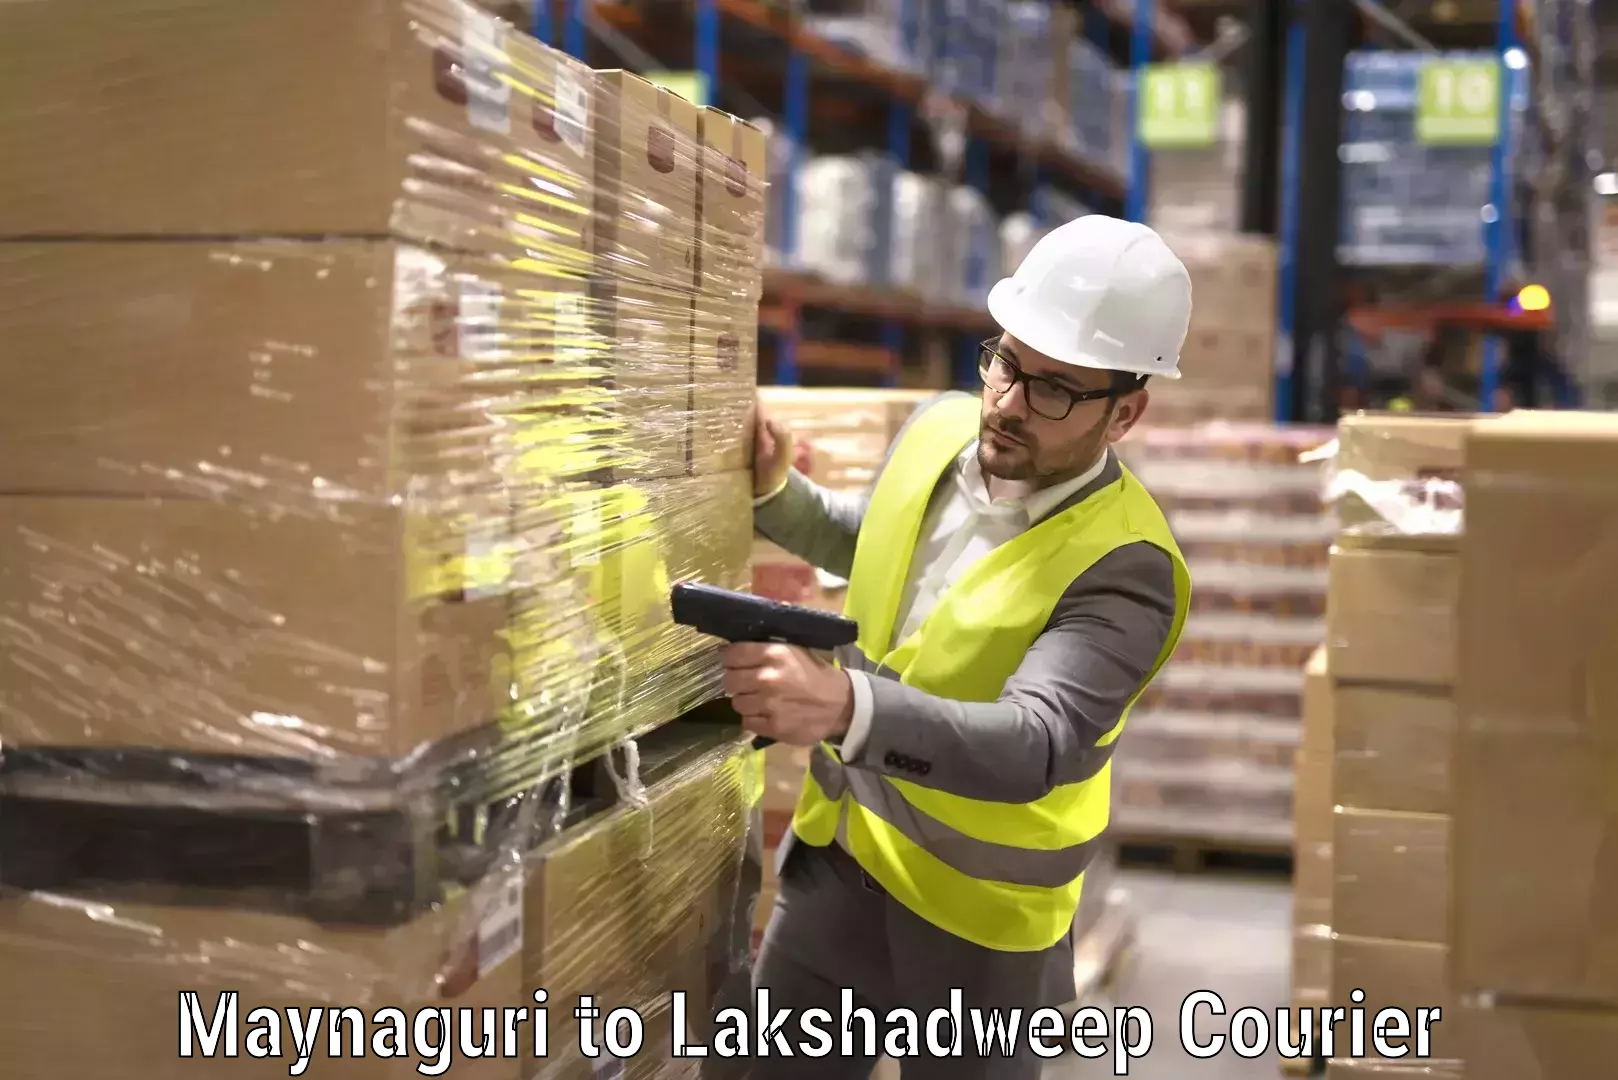 Furniture transport experts Maynaguri to Lakshadweep